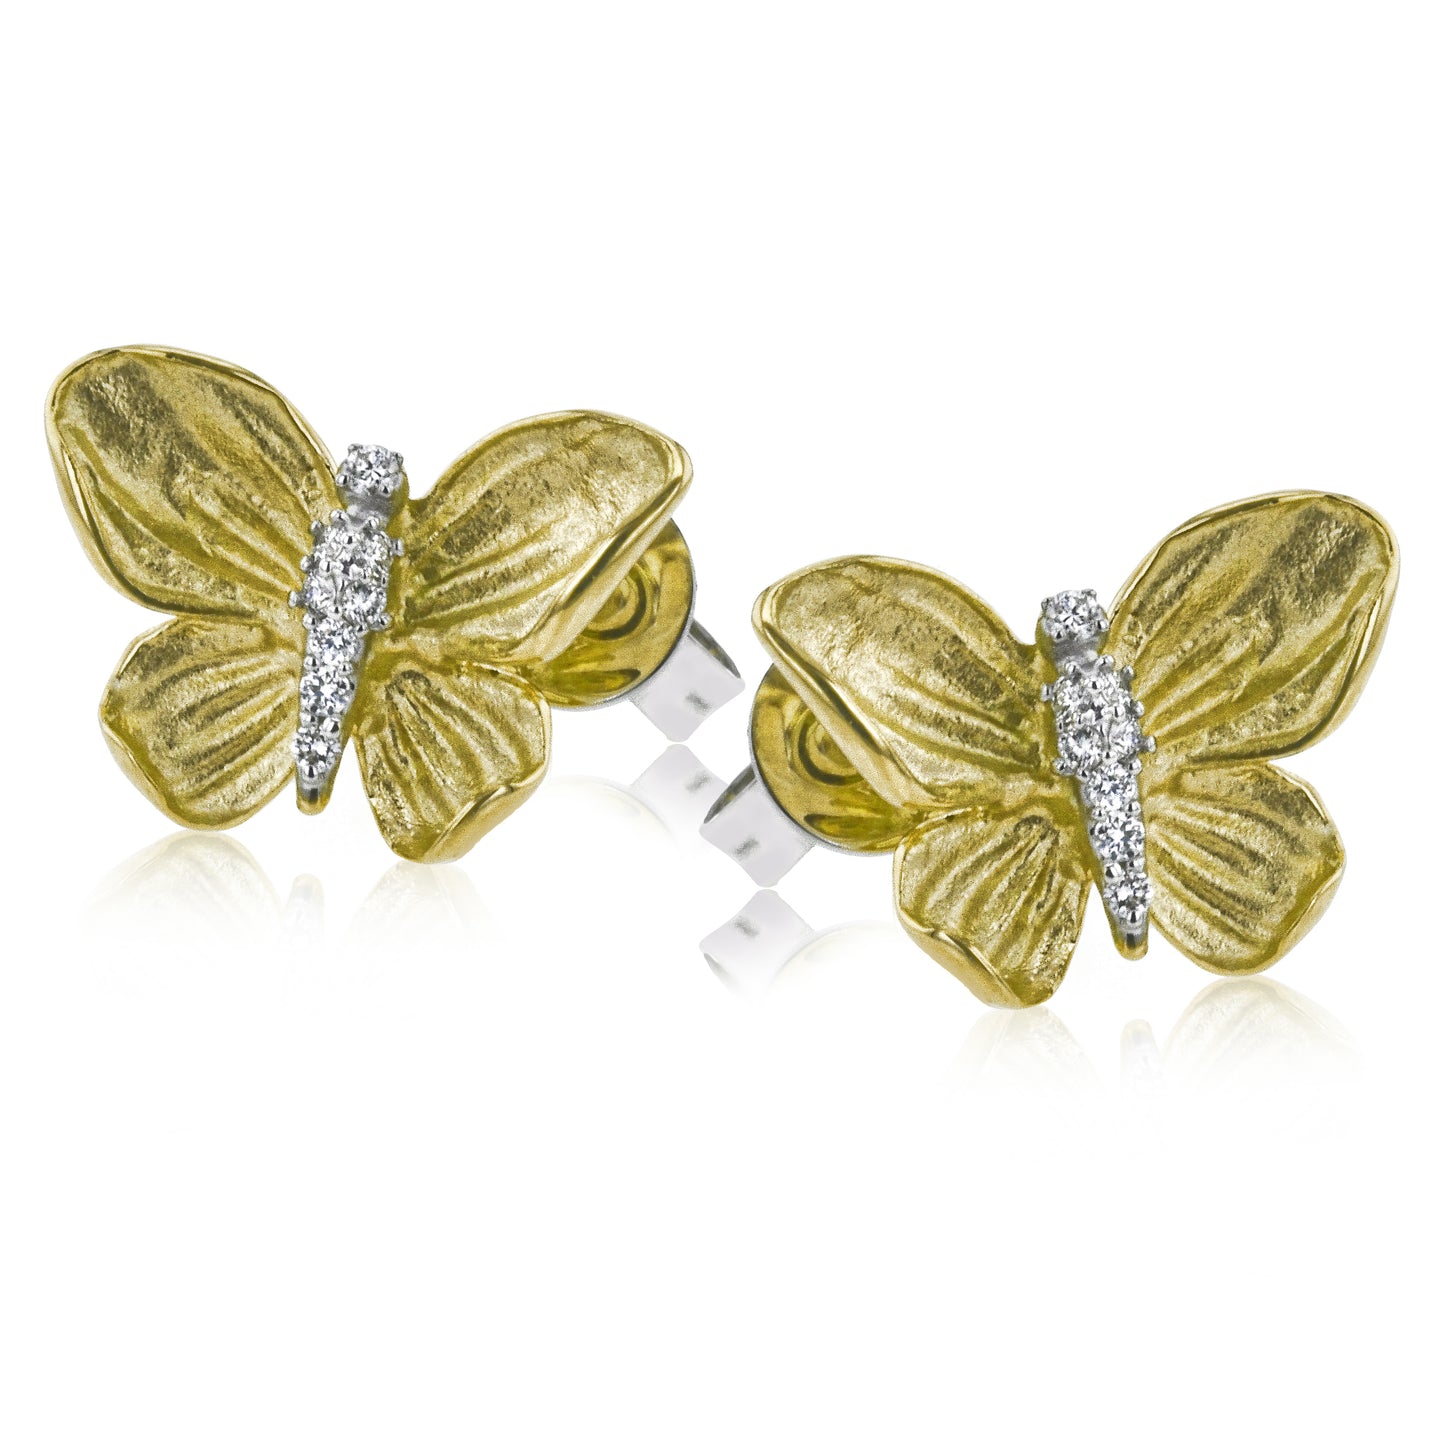 Monarch Butterfly Earrings in 18k Gold